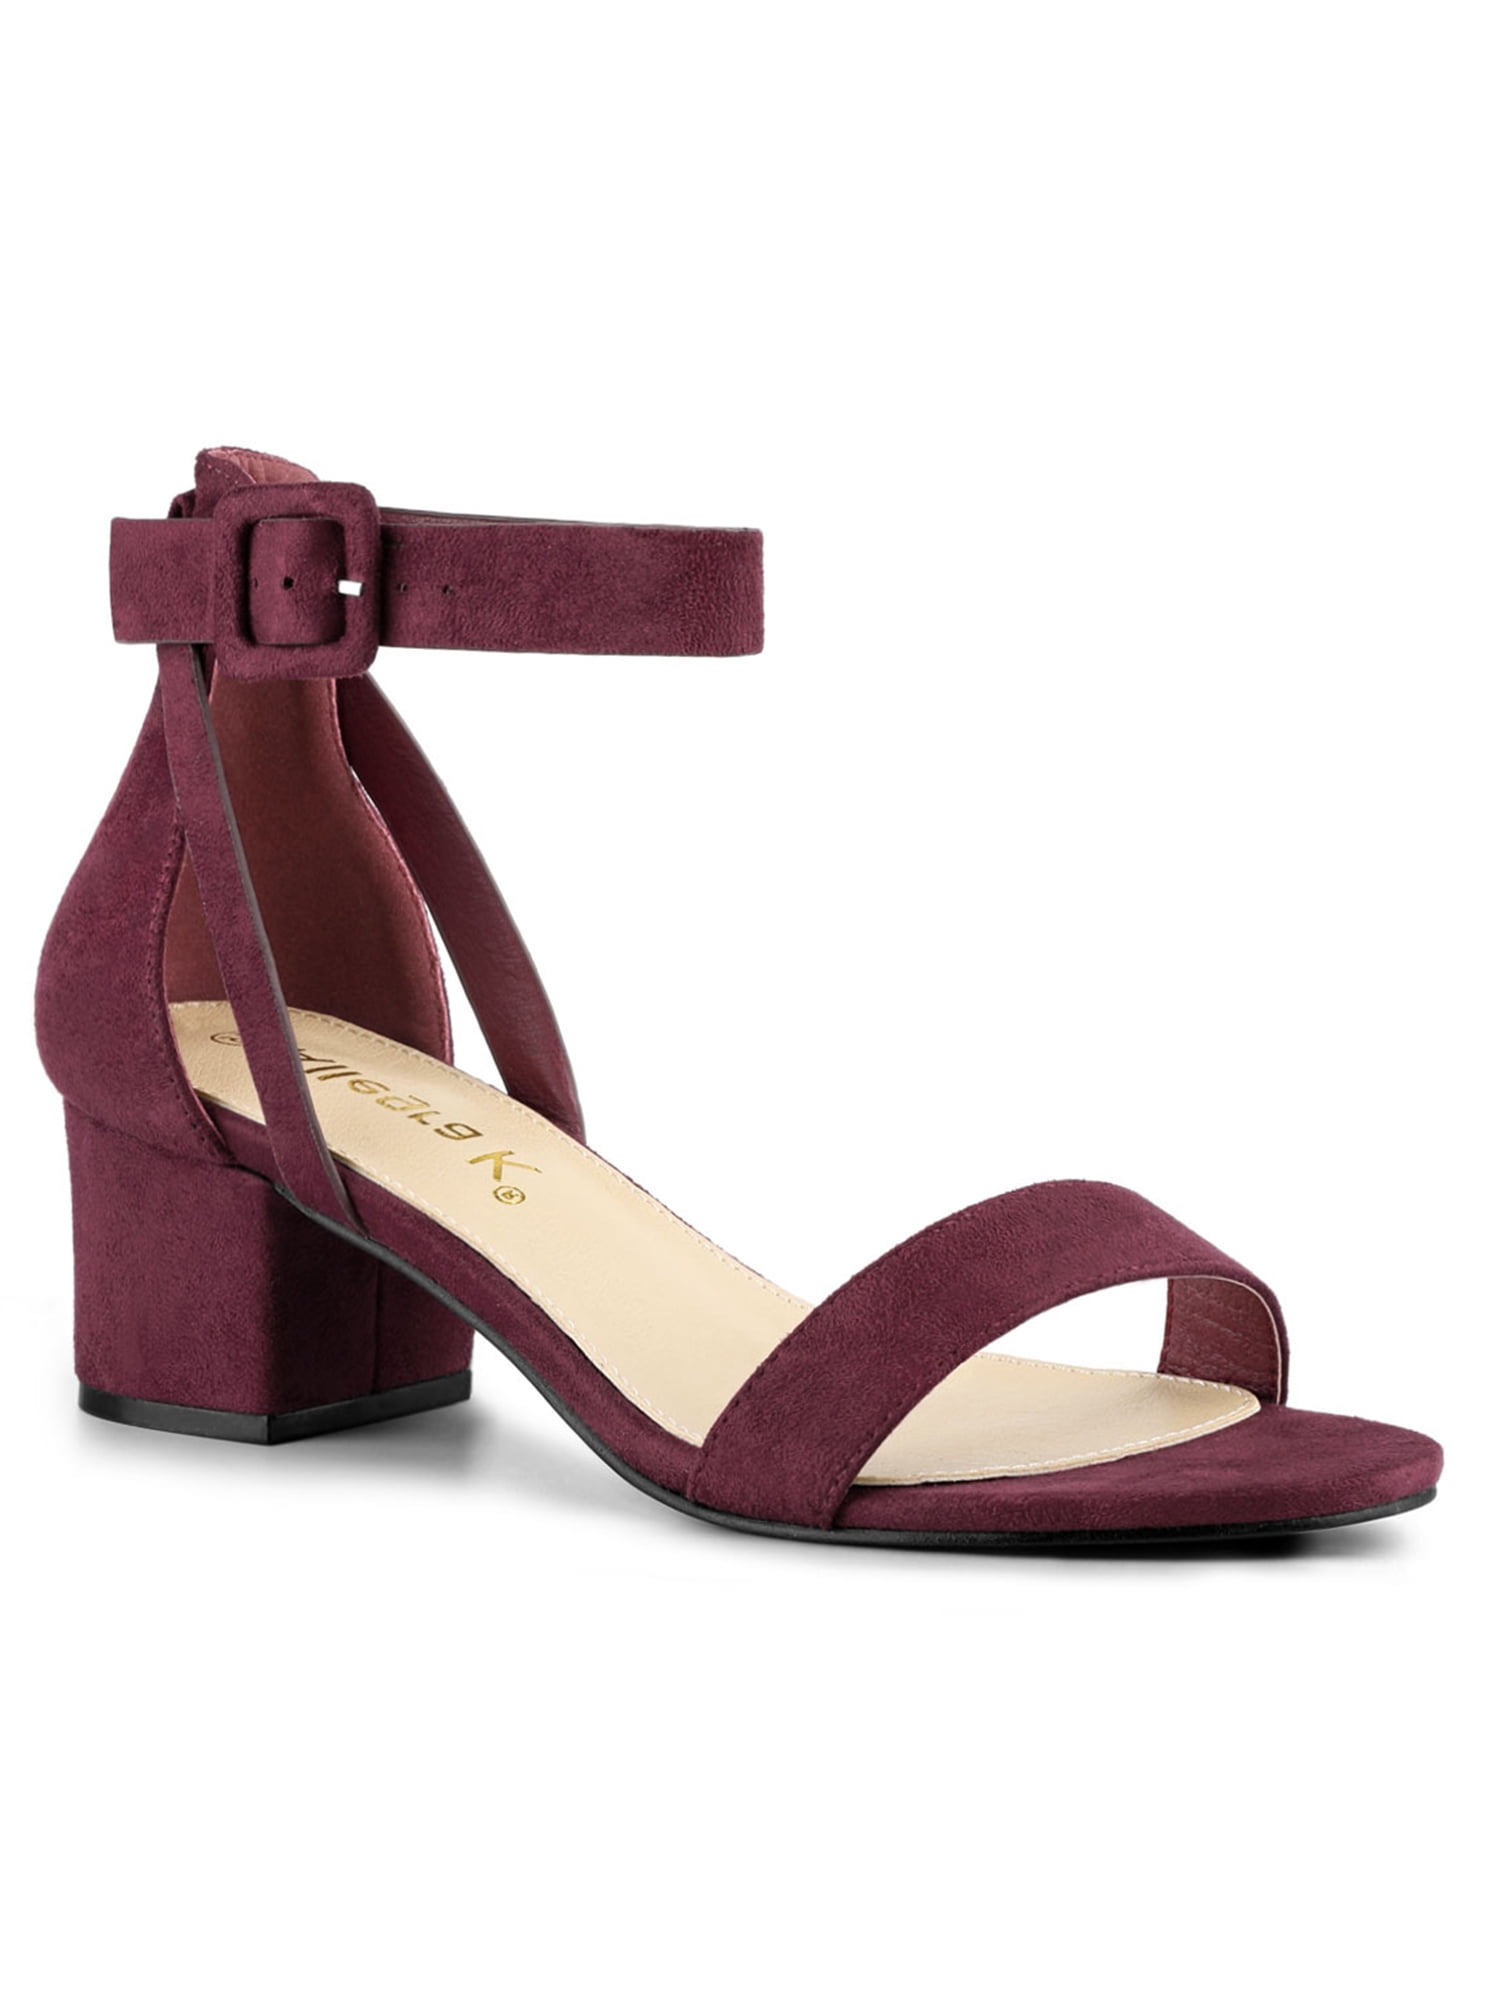 Allegra K Women's Ankle Strap Heel Sandals Shoes Burgundy 9.5 - Walmart ...